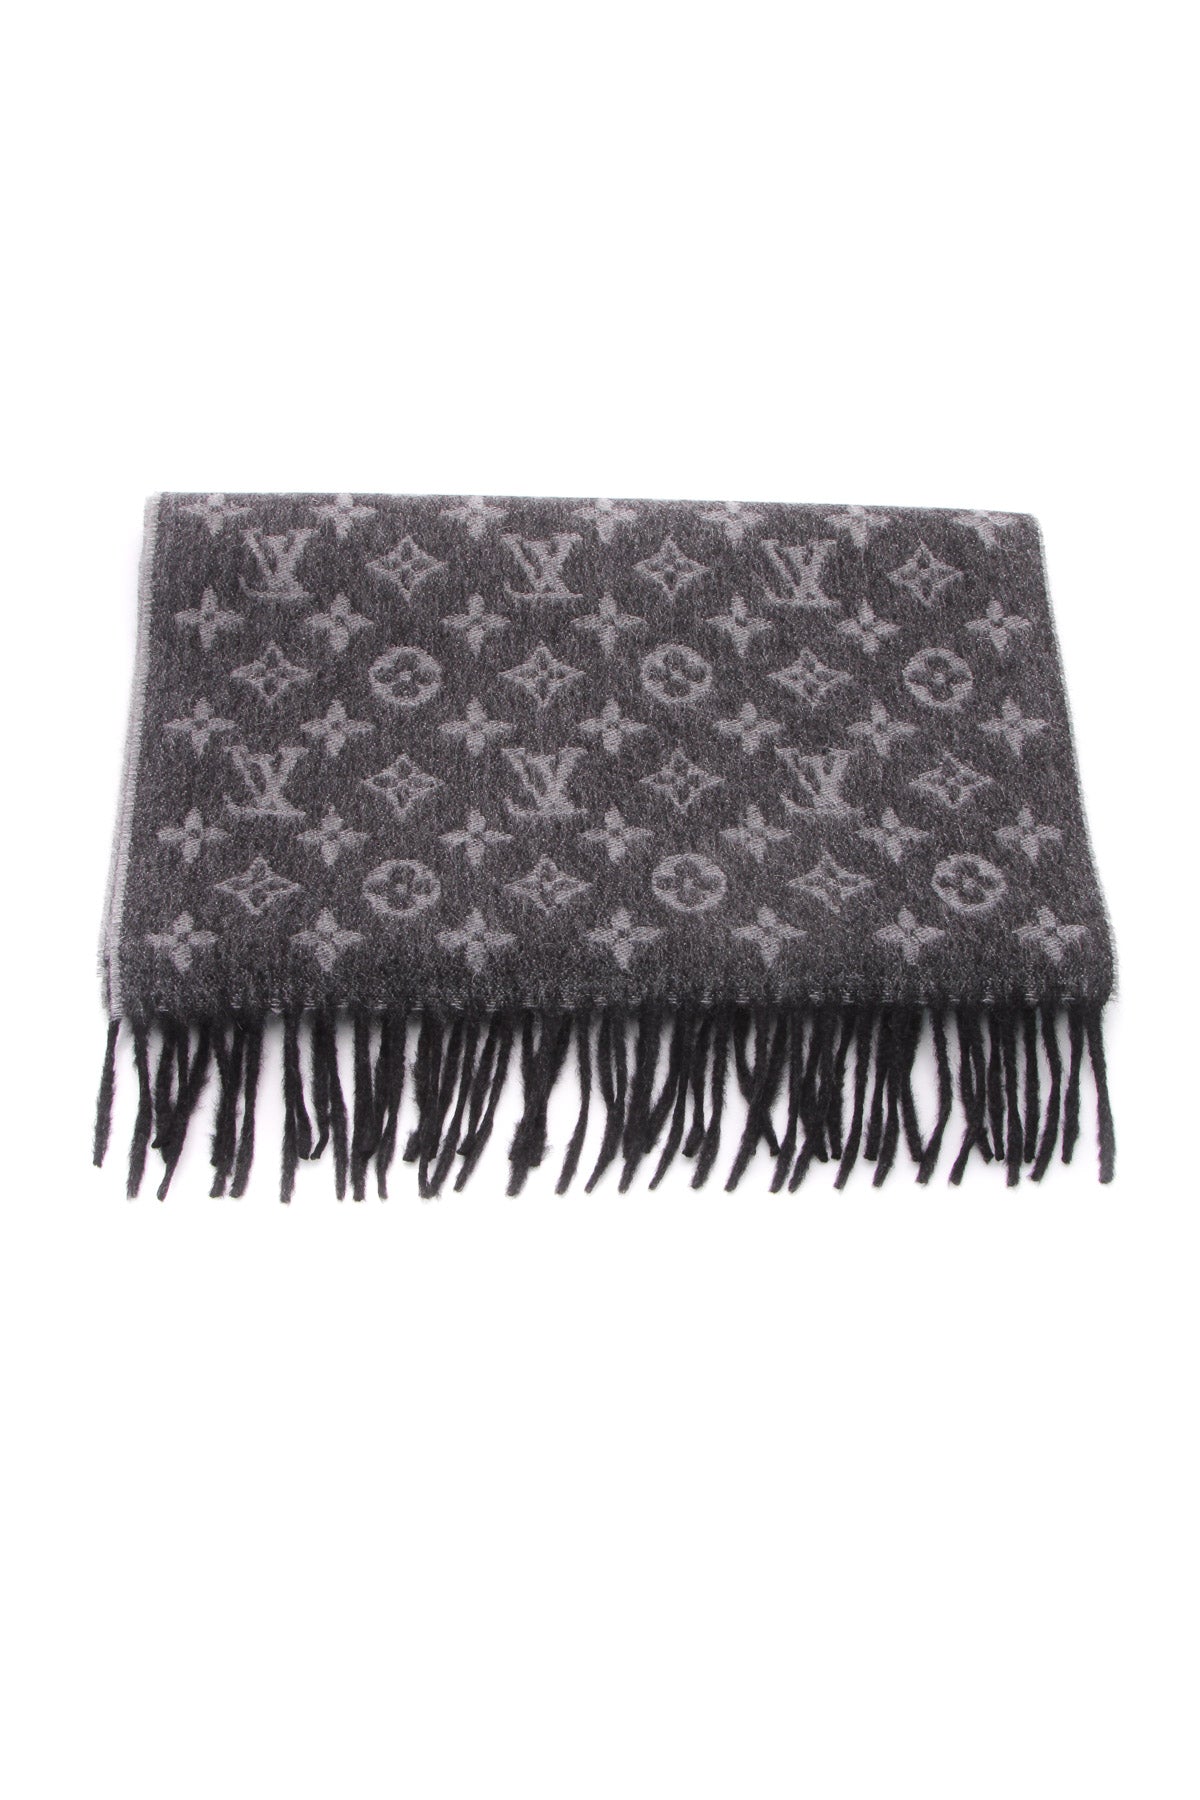 Louis Vuitton MONOGRAM Monogram gradient scarf (M71607)